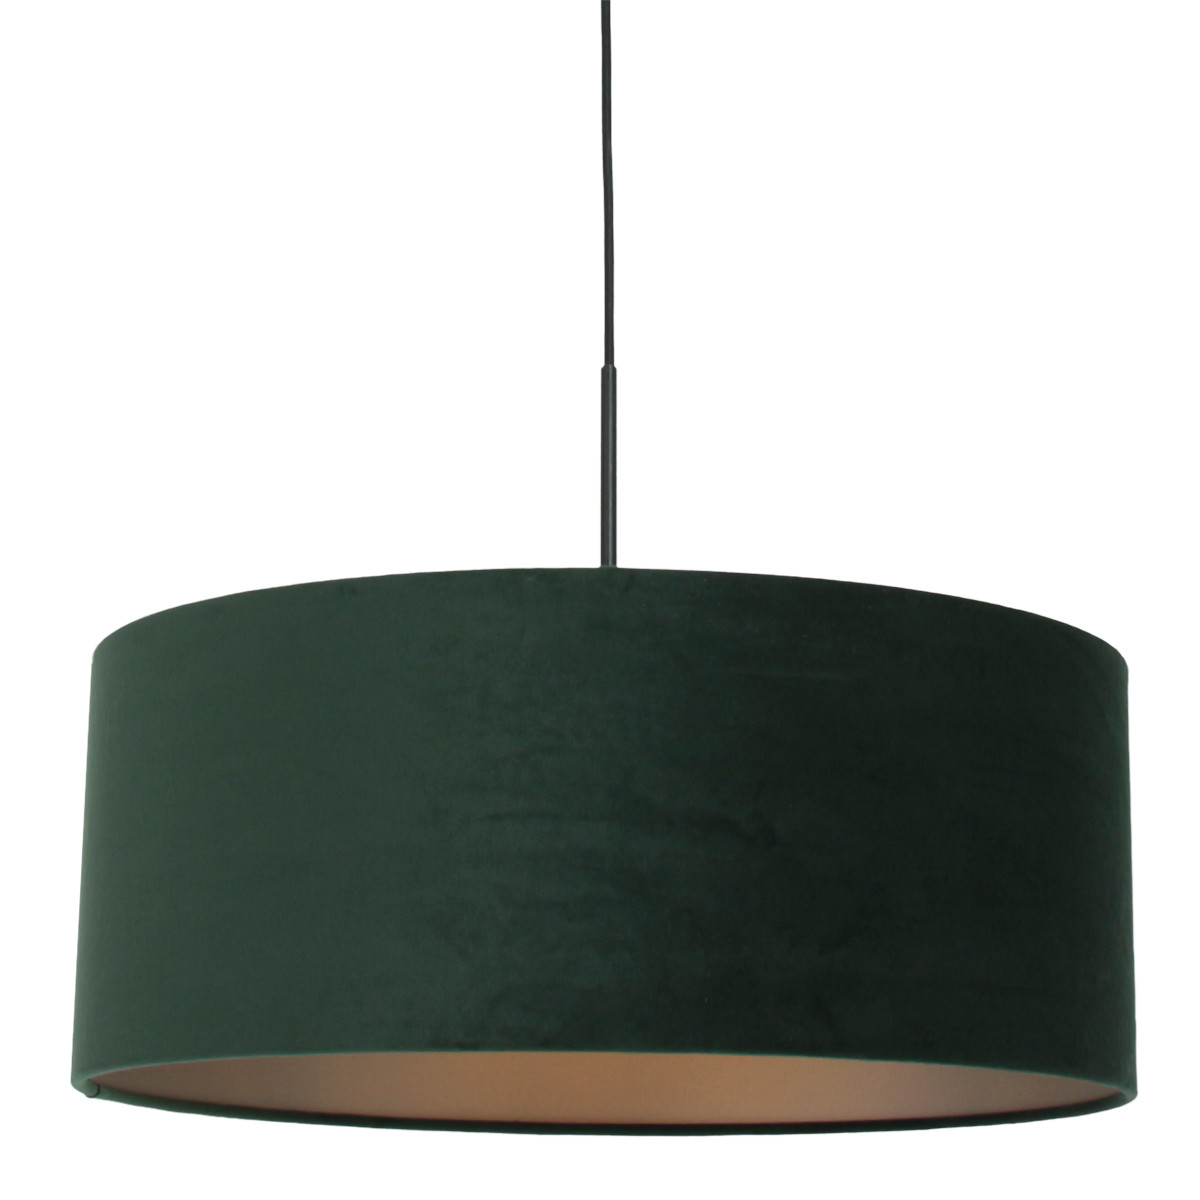 hanglamp-met-groene-velvet-kap-steinhauer-sparkled-light-8156zw